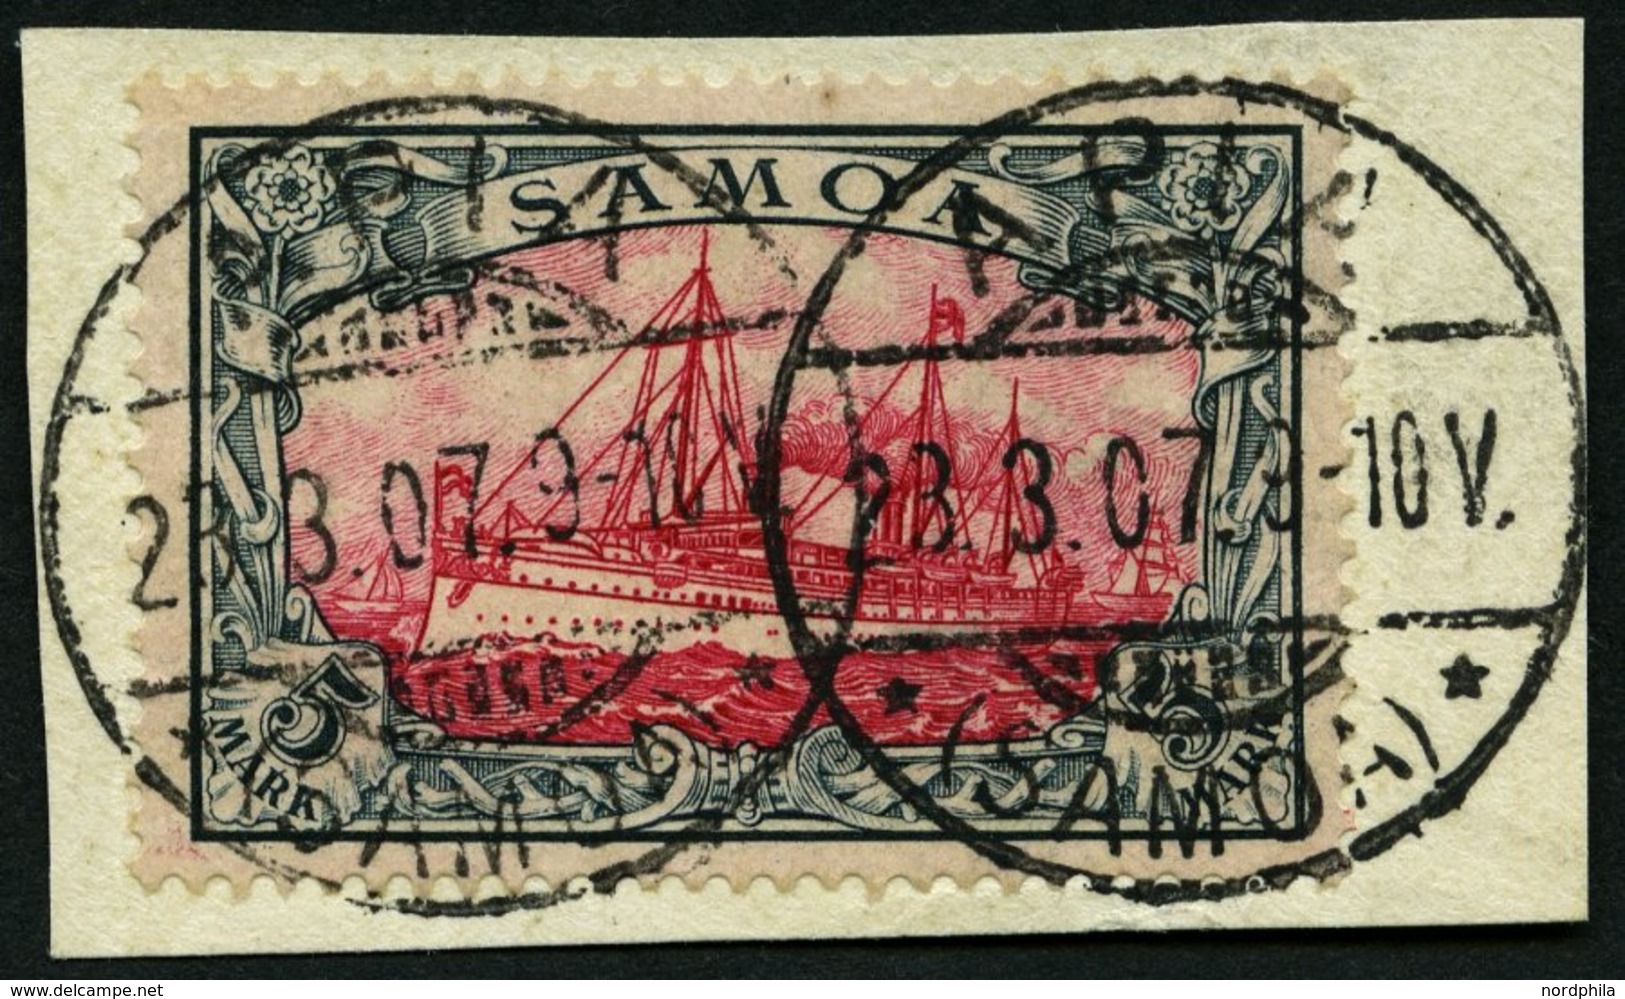 SAMOA 19 BrfStk, 1900, 5 M. Grünschwarz/bräunlichkarmin, Ohne Wz., Prachtbriefstück, Gepr. Bothe, Mi. (600.-) - Samoa